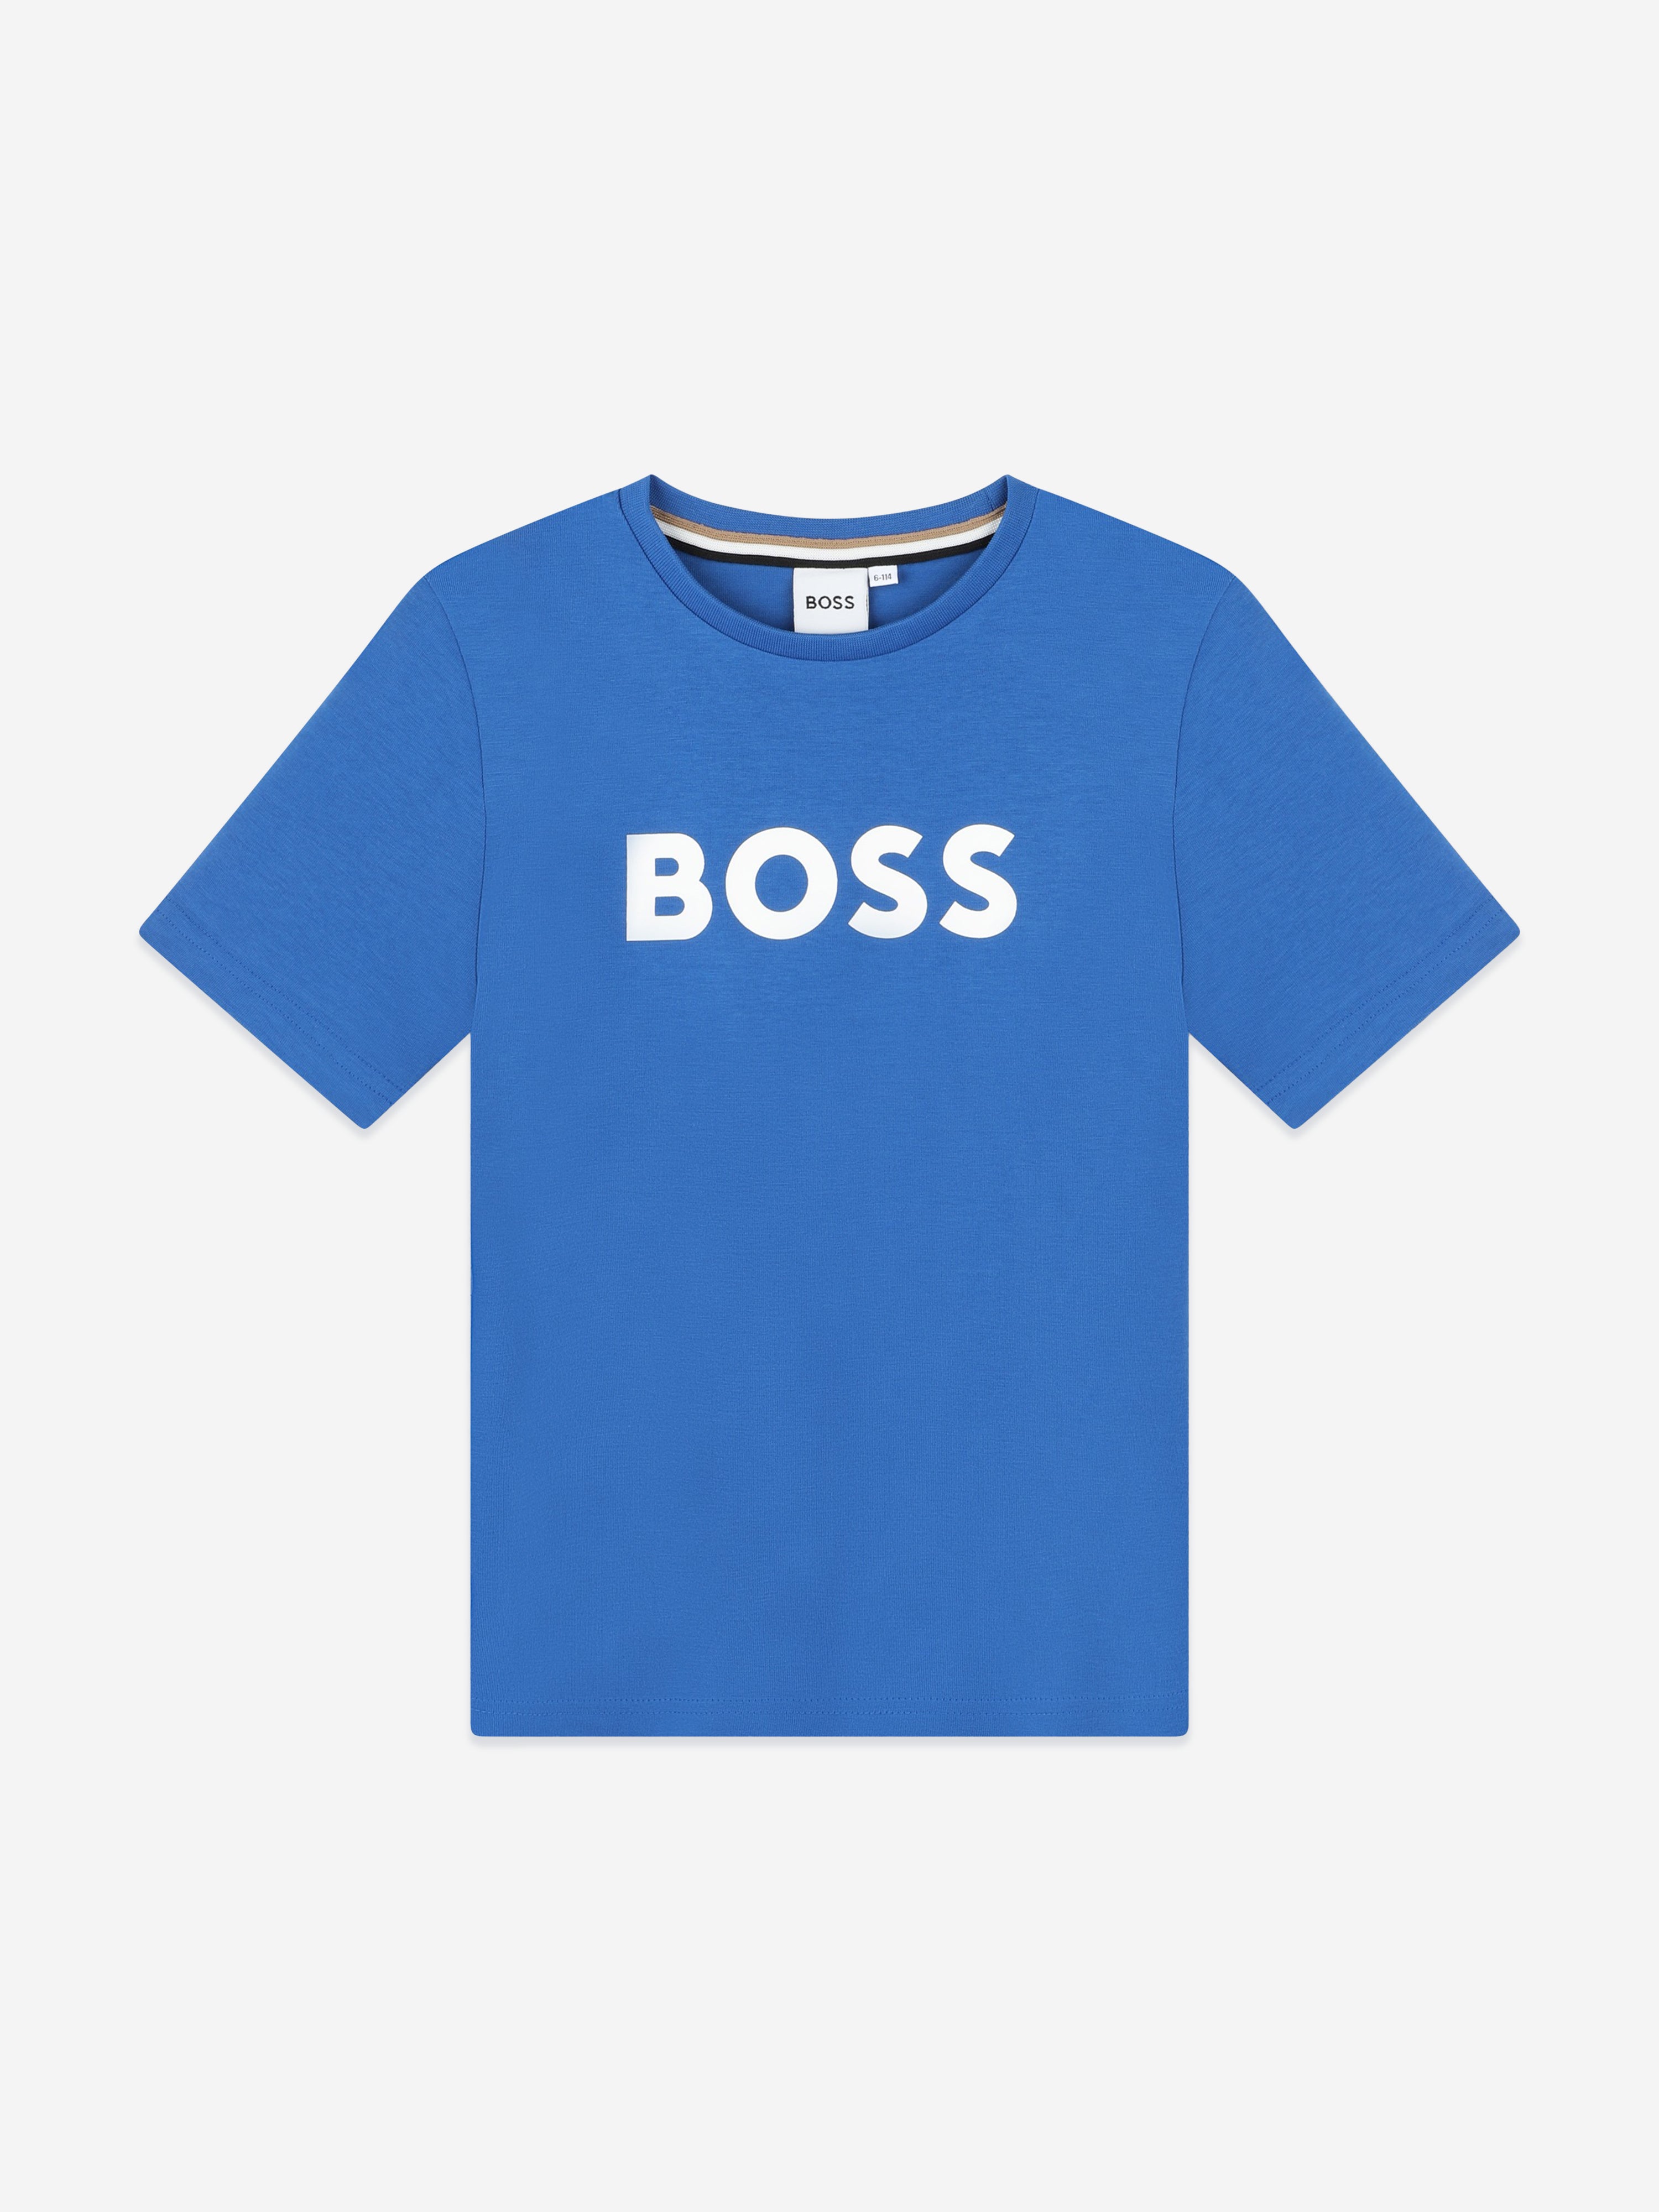 Hugo Boss Kids' Boys Logo Print T-shirt In Blue